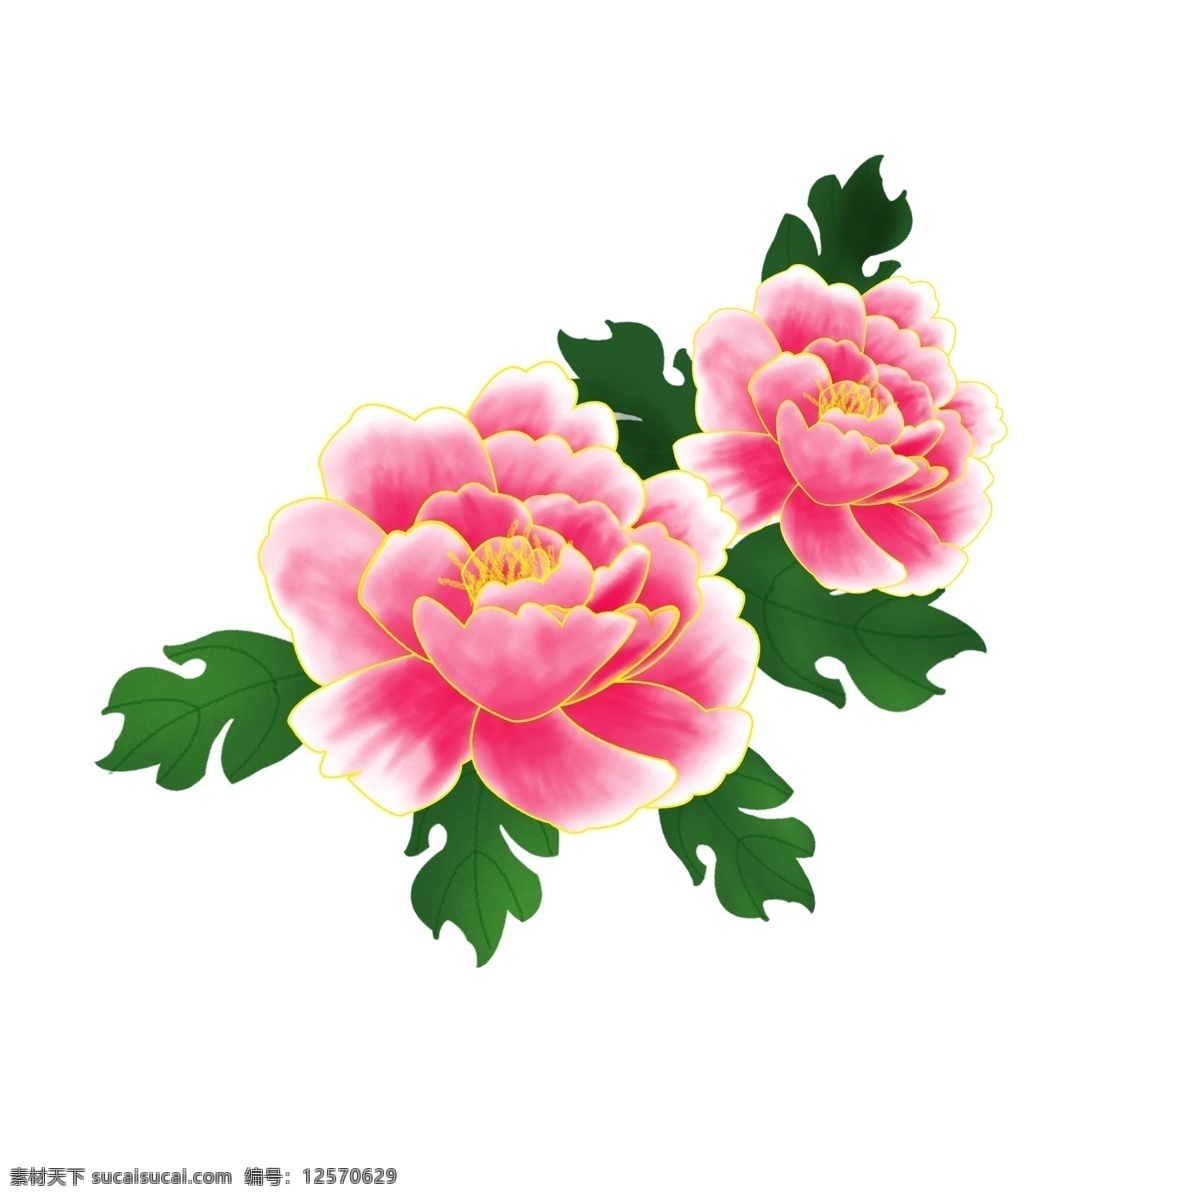 手绘 植物 粉红色 花 牡丹花 手绘花 手绘植物 手绘牡丹 花卉 牡丹